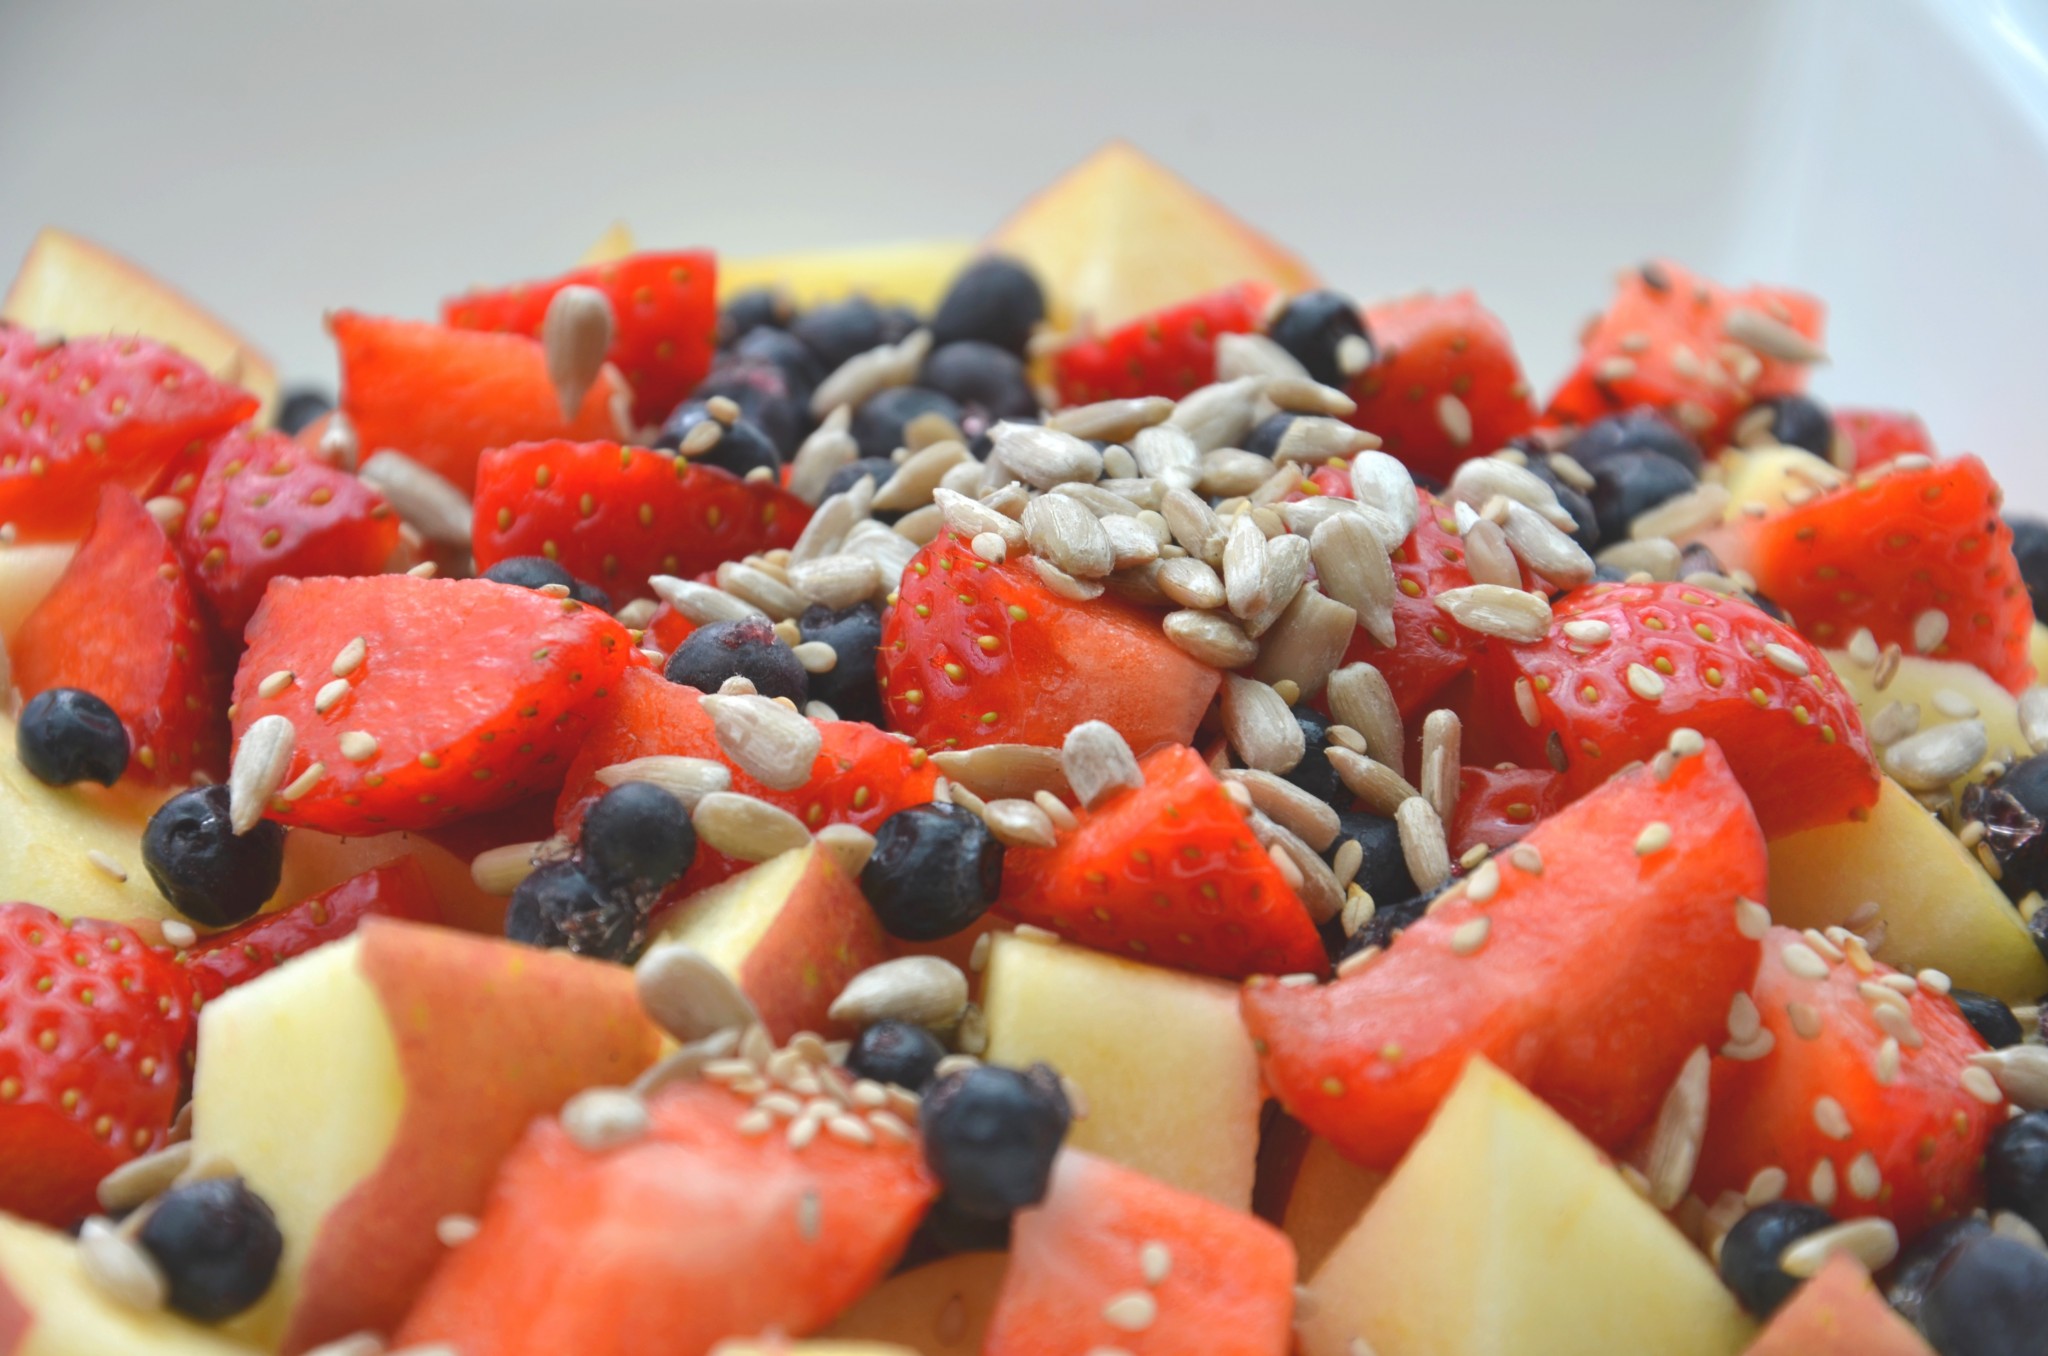 Les fruits séchés sont-ils tout aussi nutritifs que les fruits frais ? Une  diététicienne répond